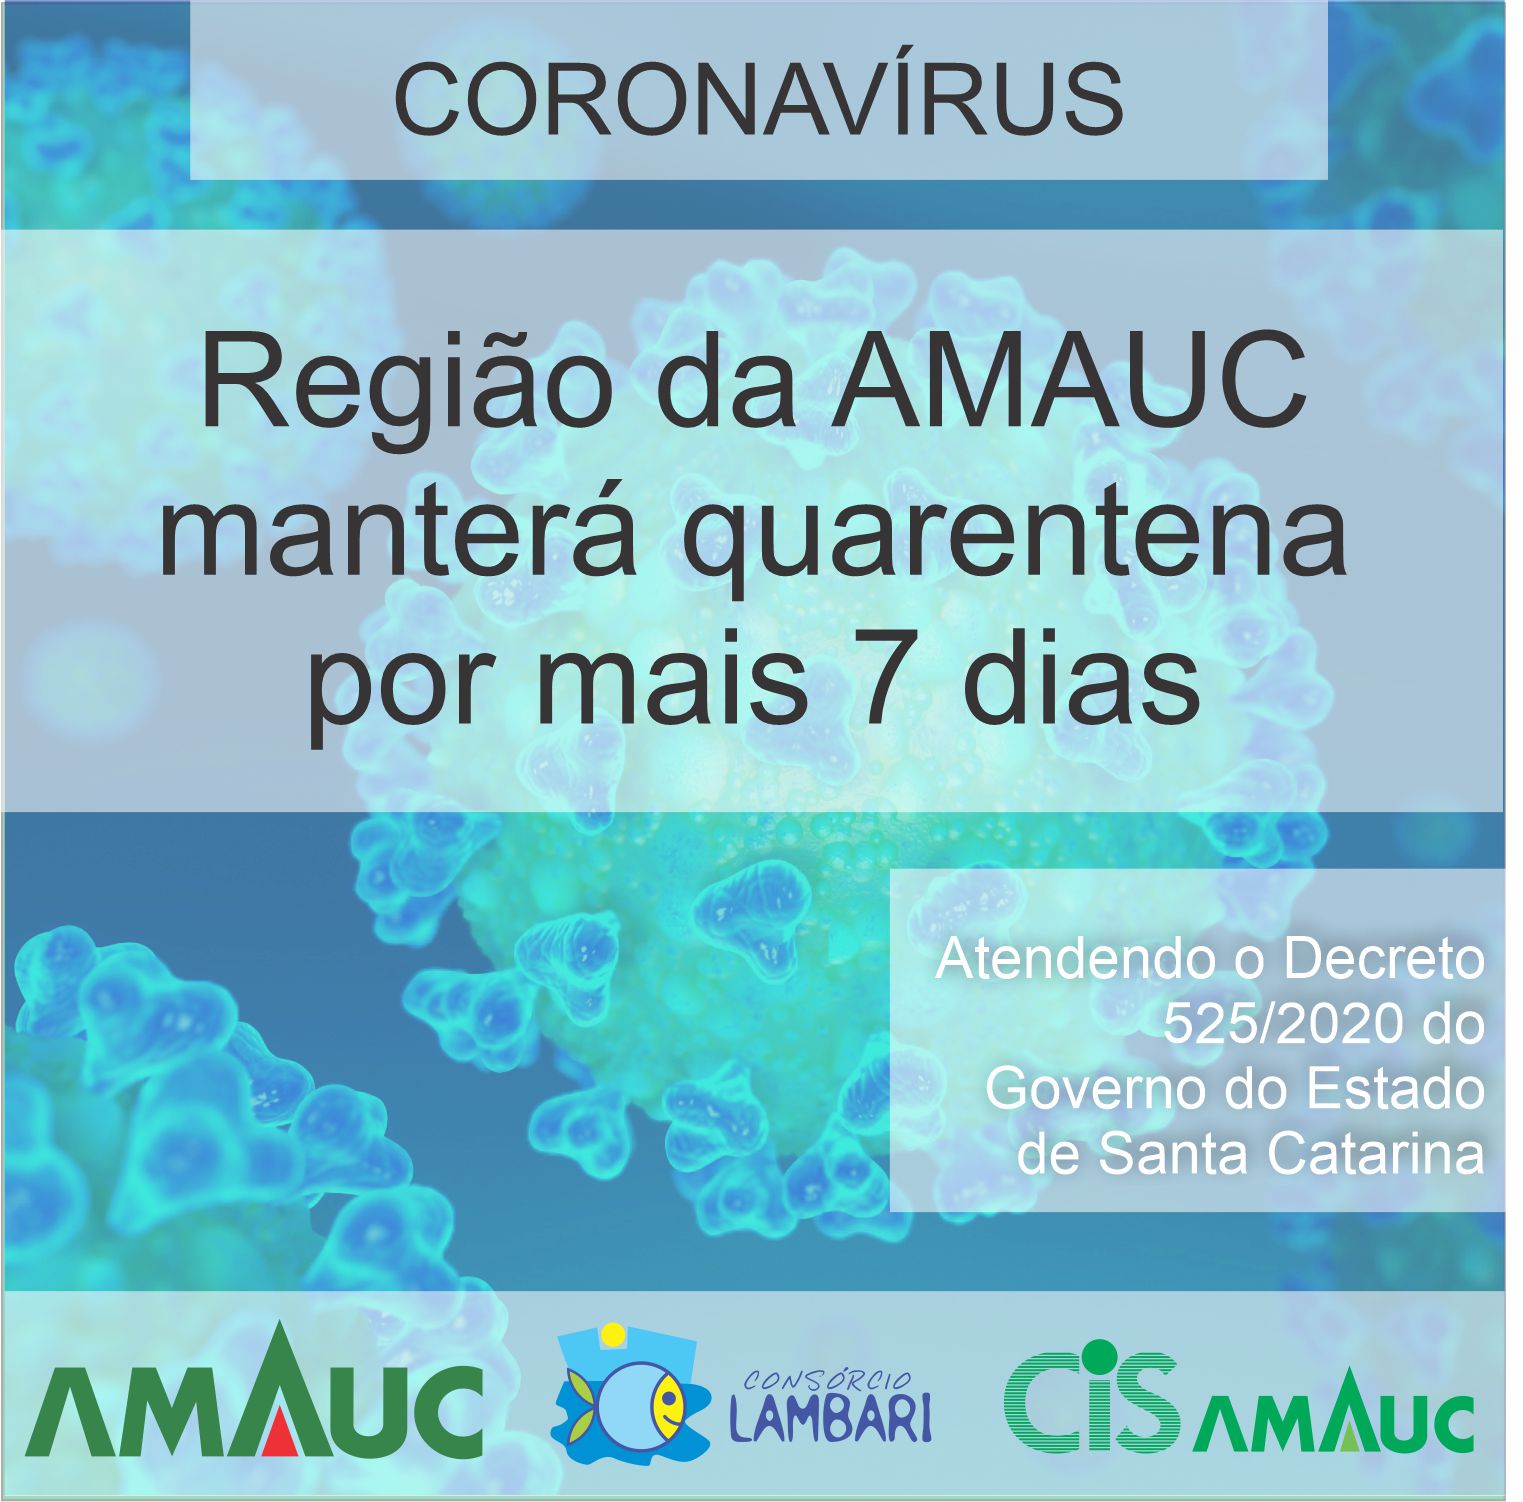 You are currently viewing Municípios da Amauc estão trabalhado de forma conjunta e atendendo o que determina o Decreto nº 525/2020, do Governo do Estado de Santa Catarina.